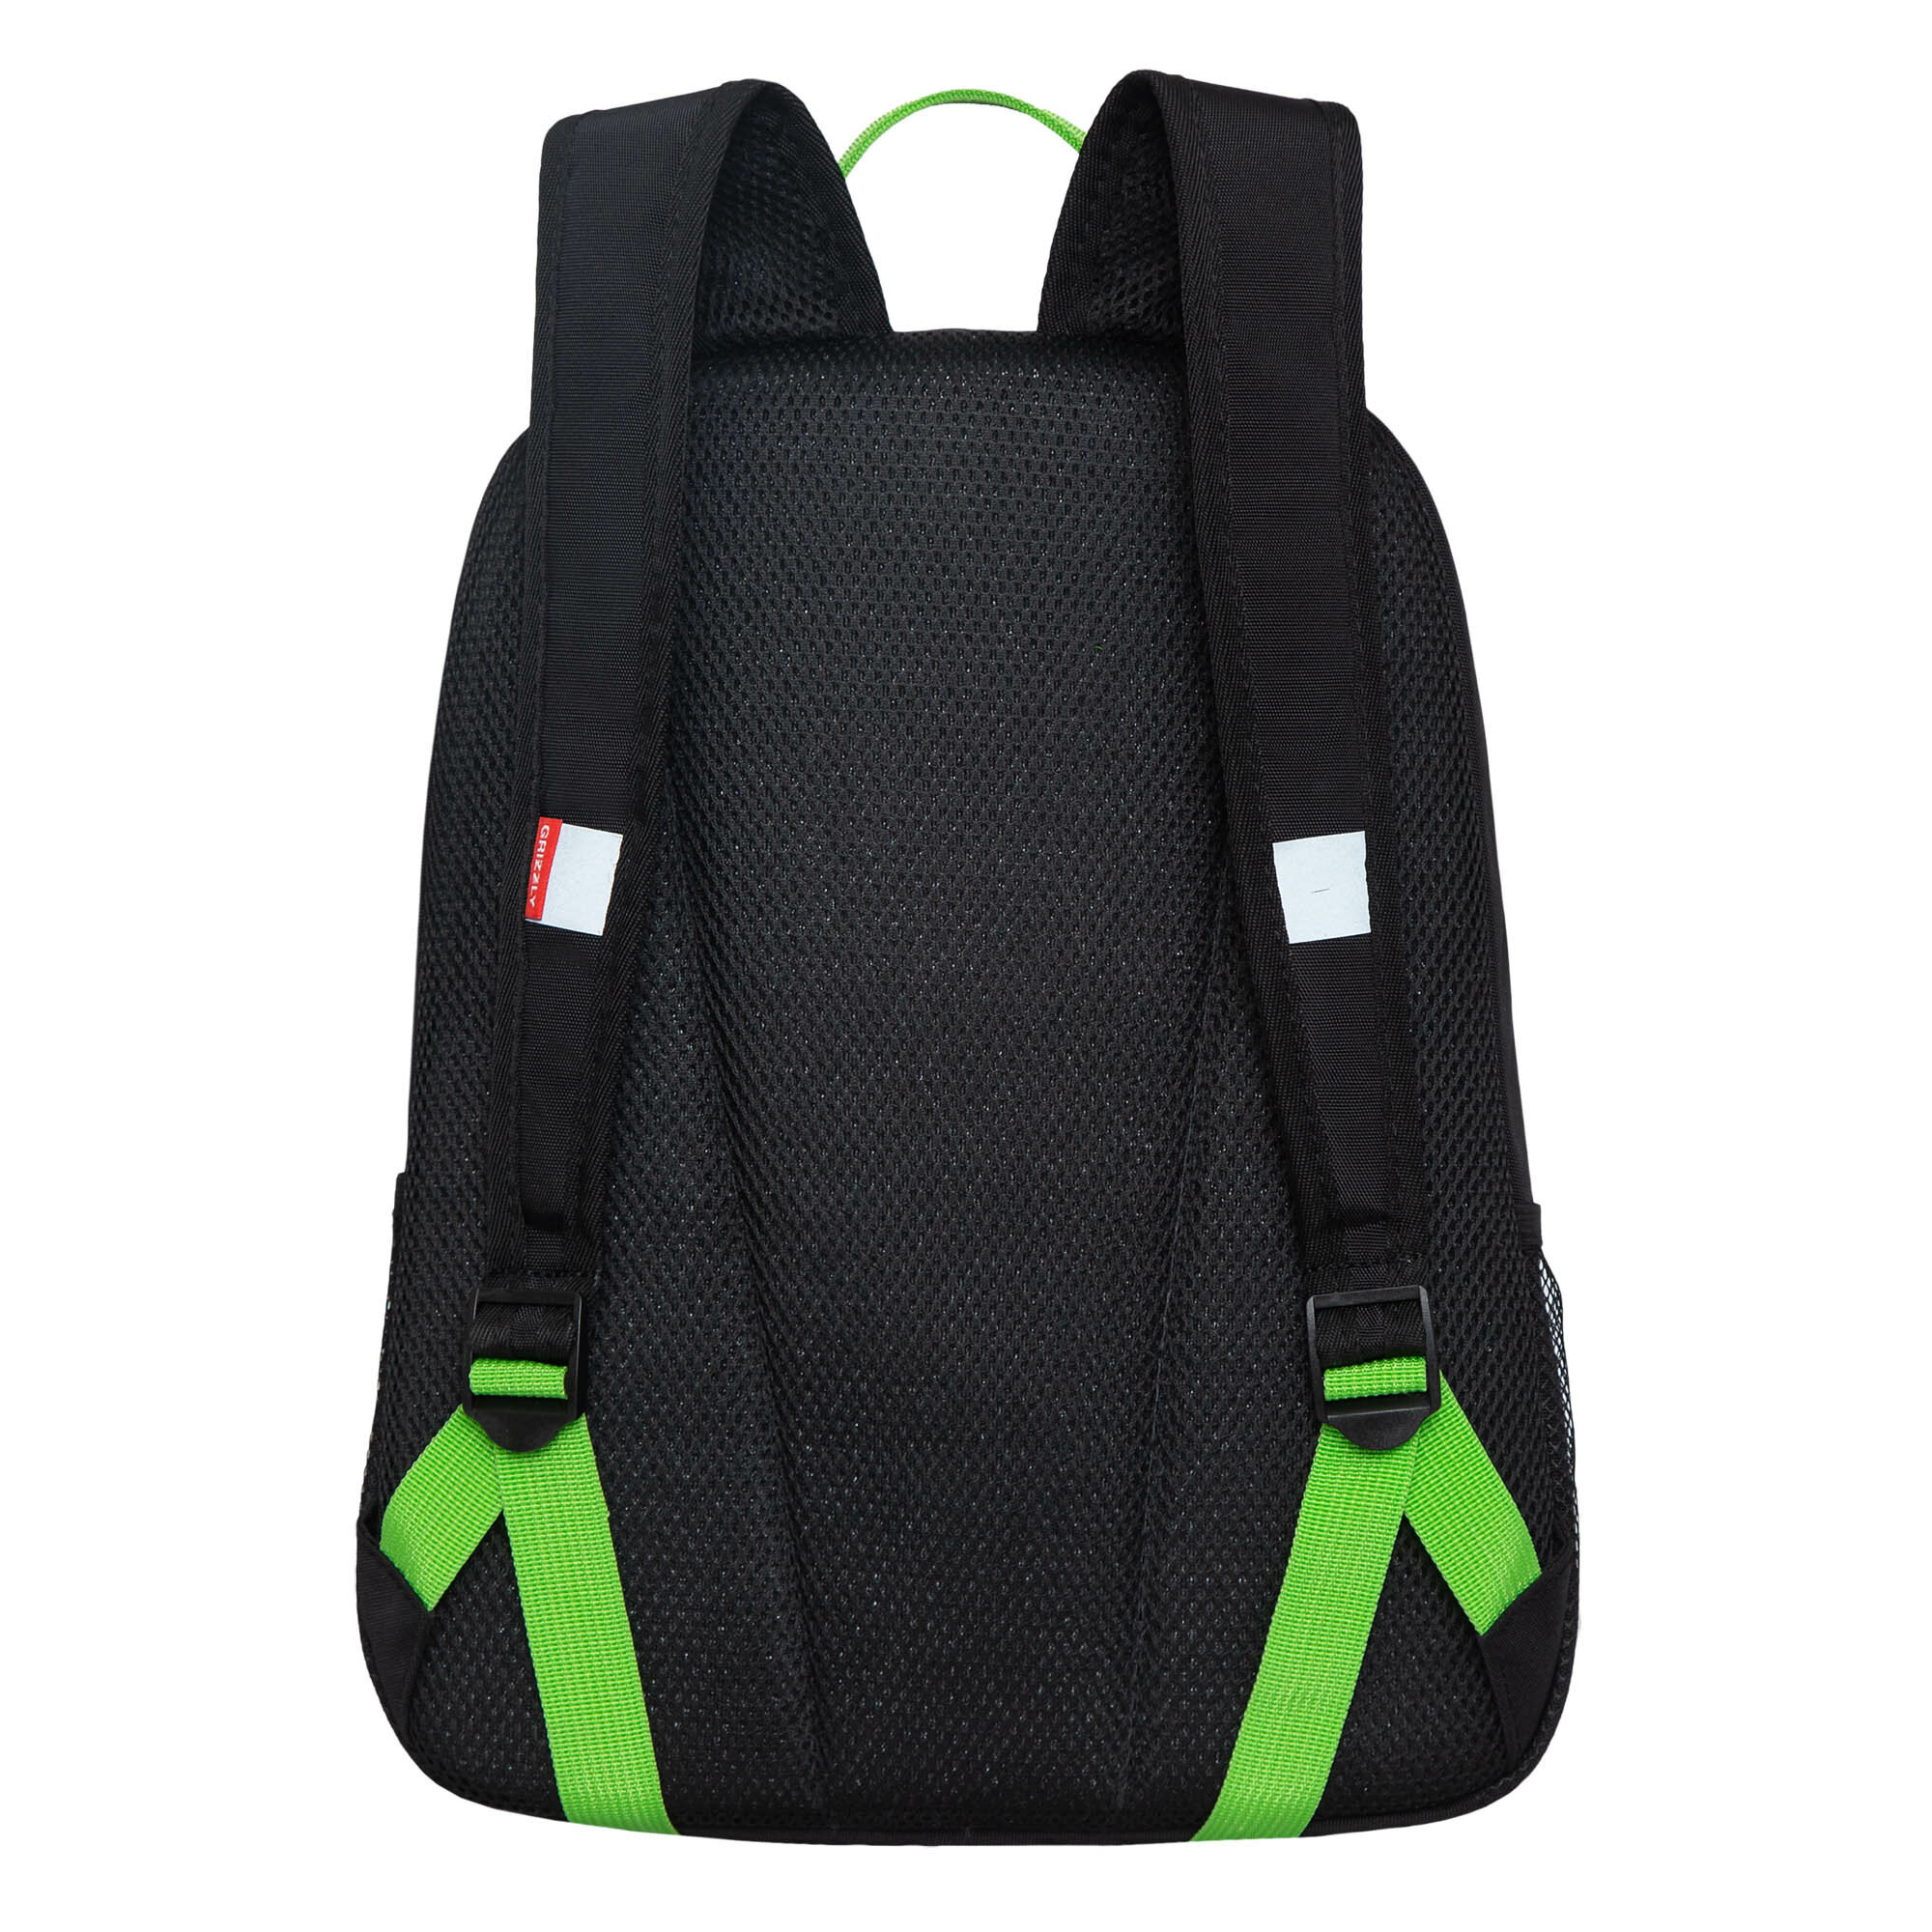 Рюкзак школьный GRIZZLY легкий с жесткой спинкой, двумя отделениями, для мальчика RB-351-1/1